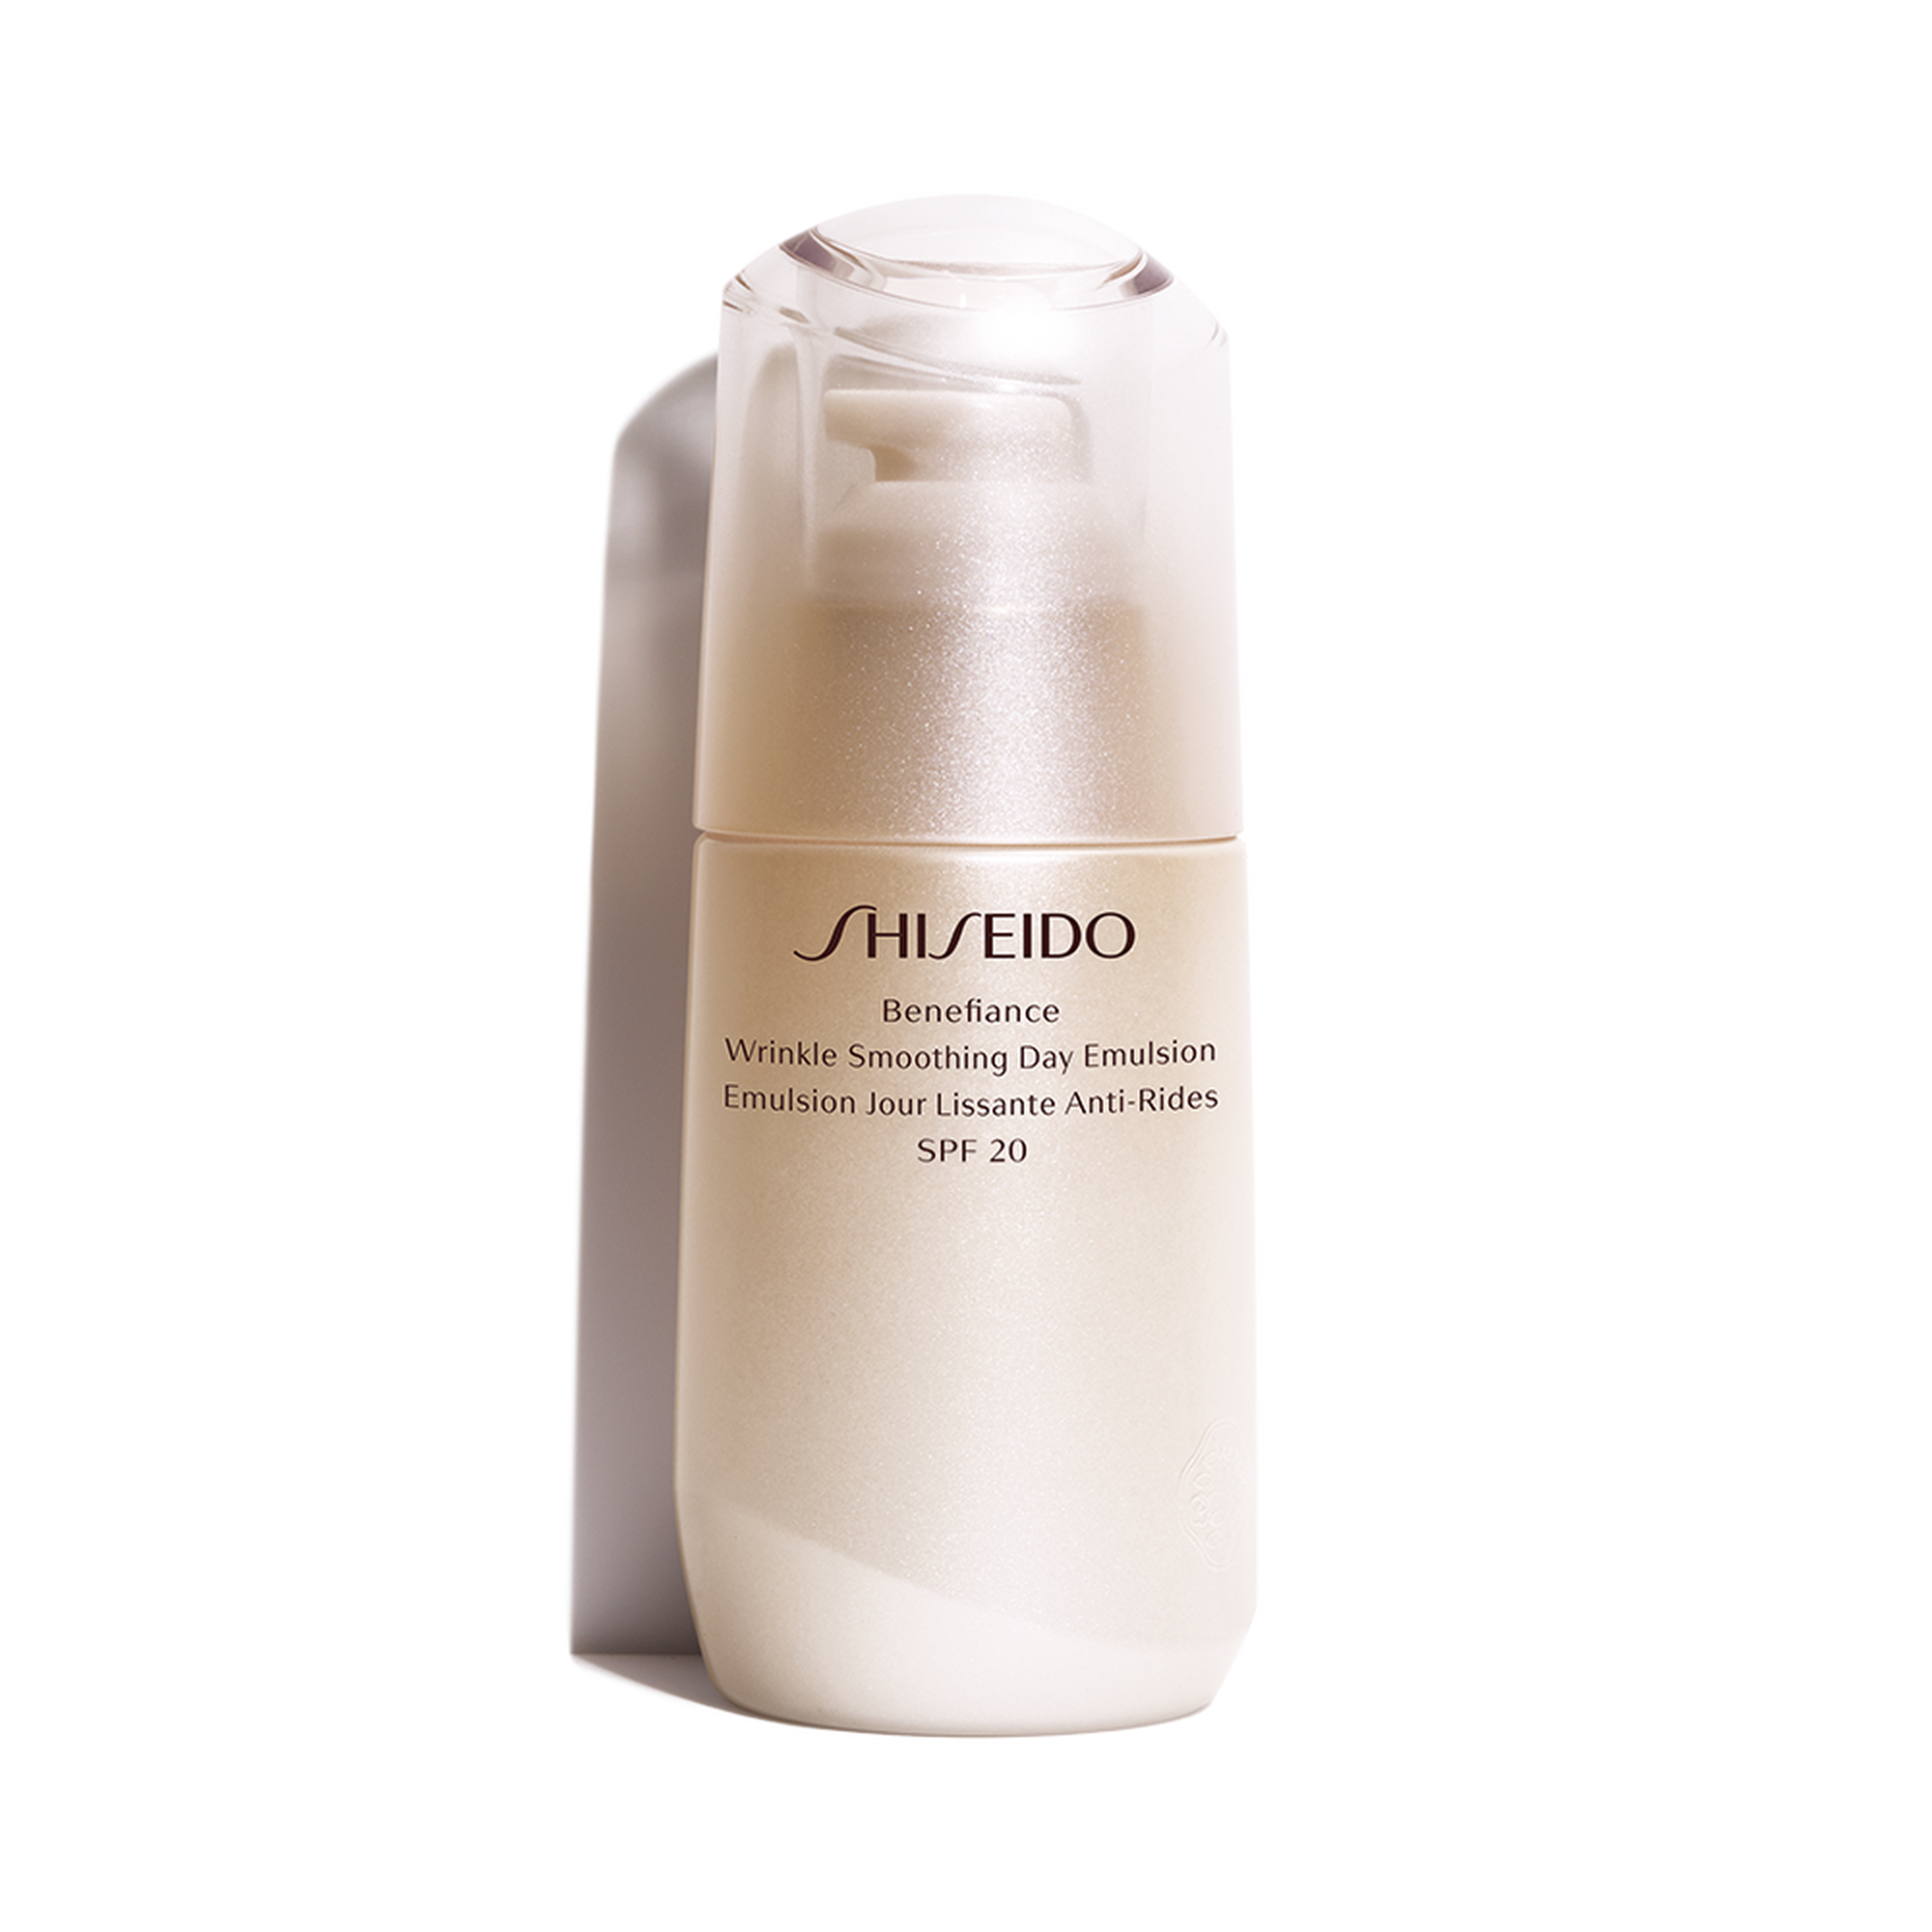 Shiseido Benefiance Wrinkle Smoothing Day Emulsion